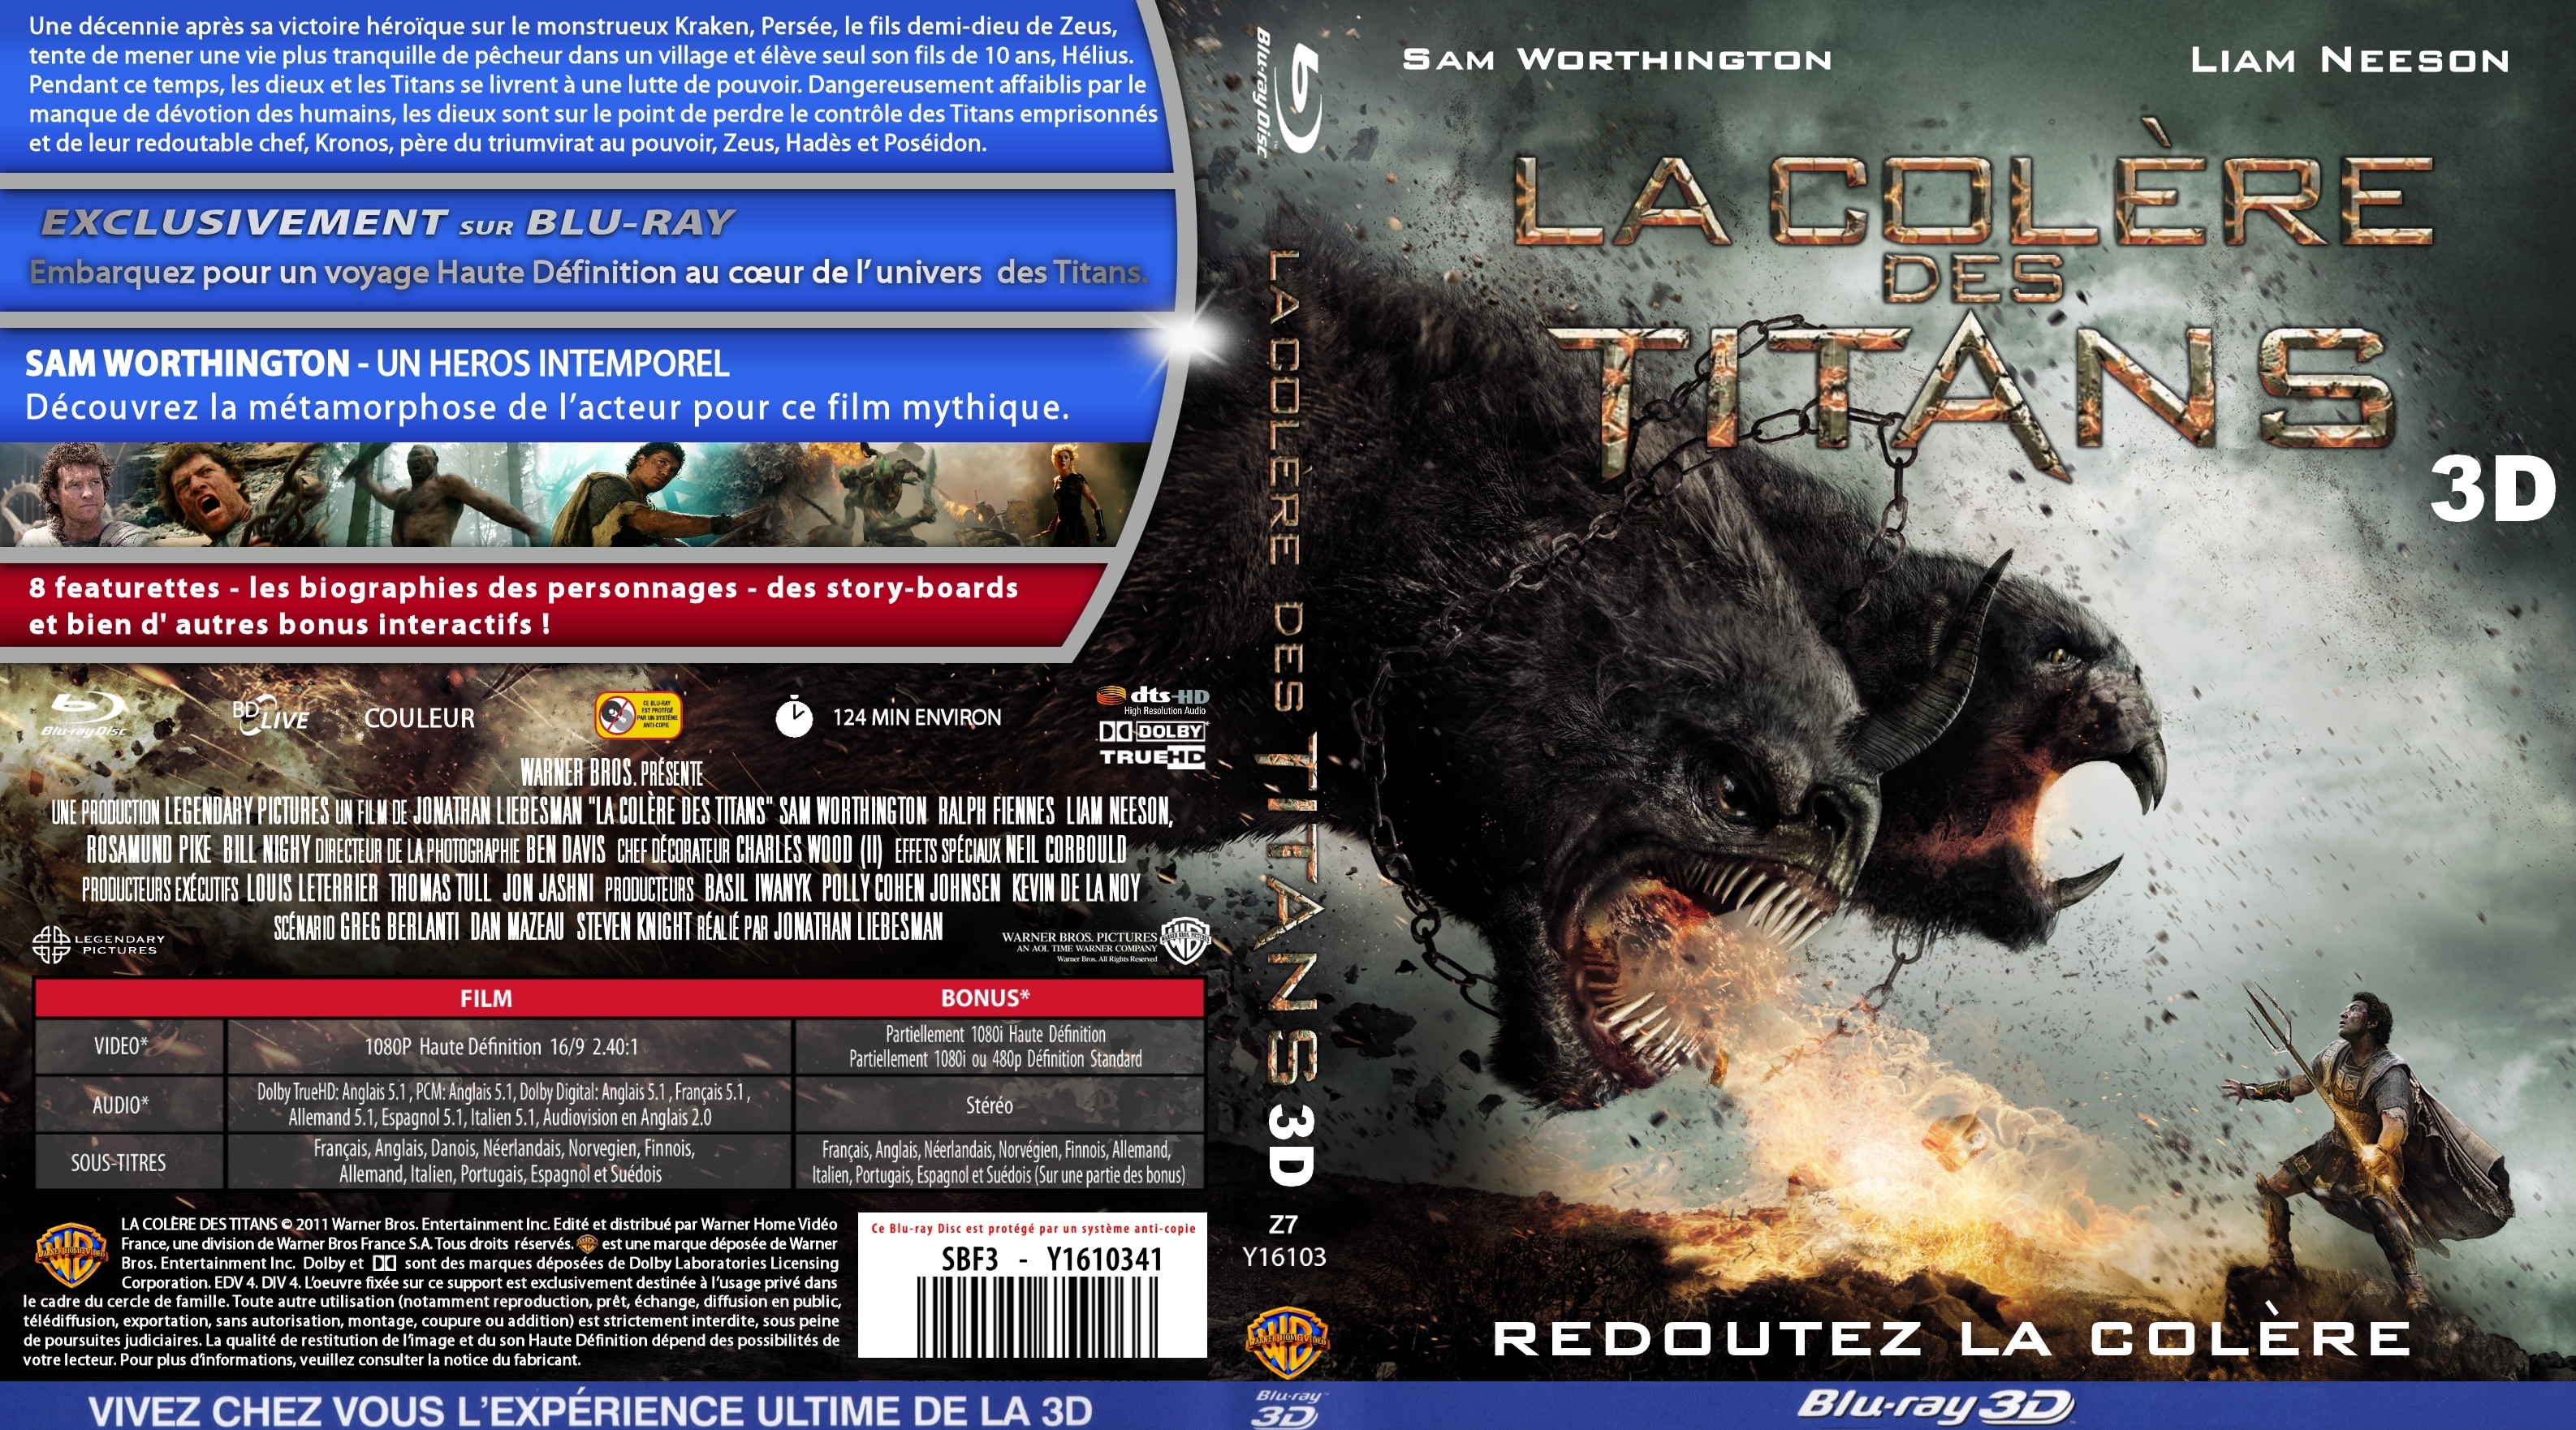 Jaquette DVD La colre des titans 3D custom (BLU-RAY)